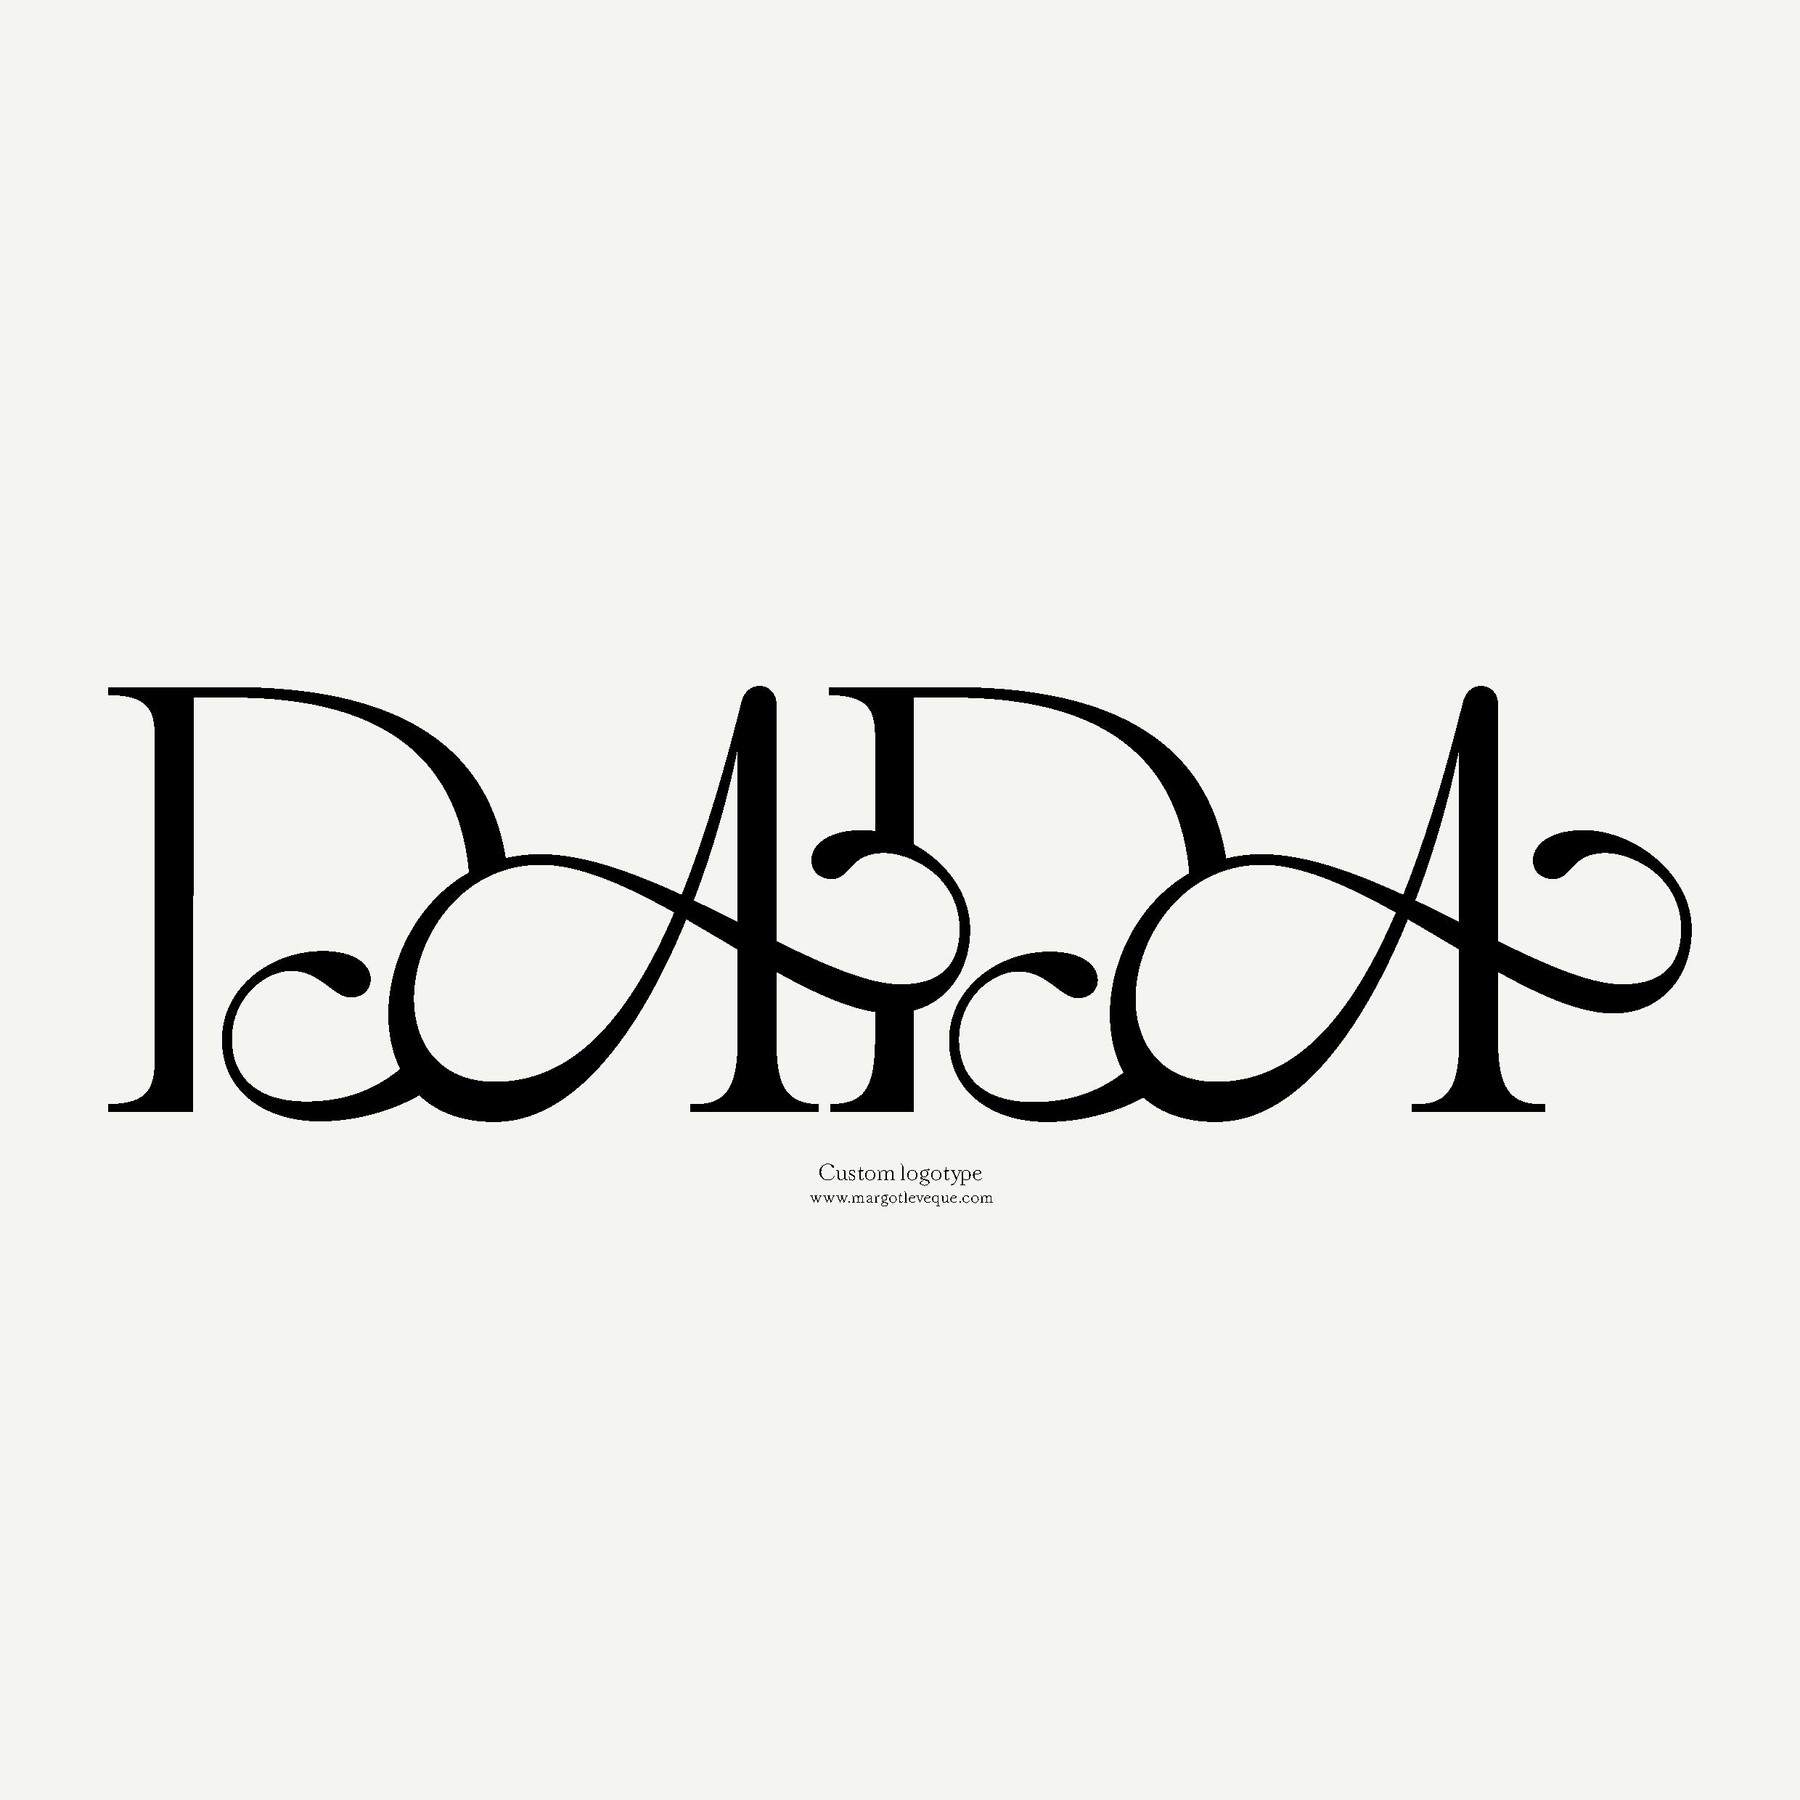 dada-mleveque-logo4.jpg?v=1633704001